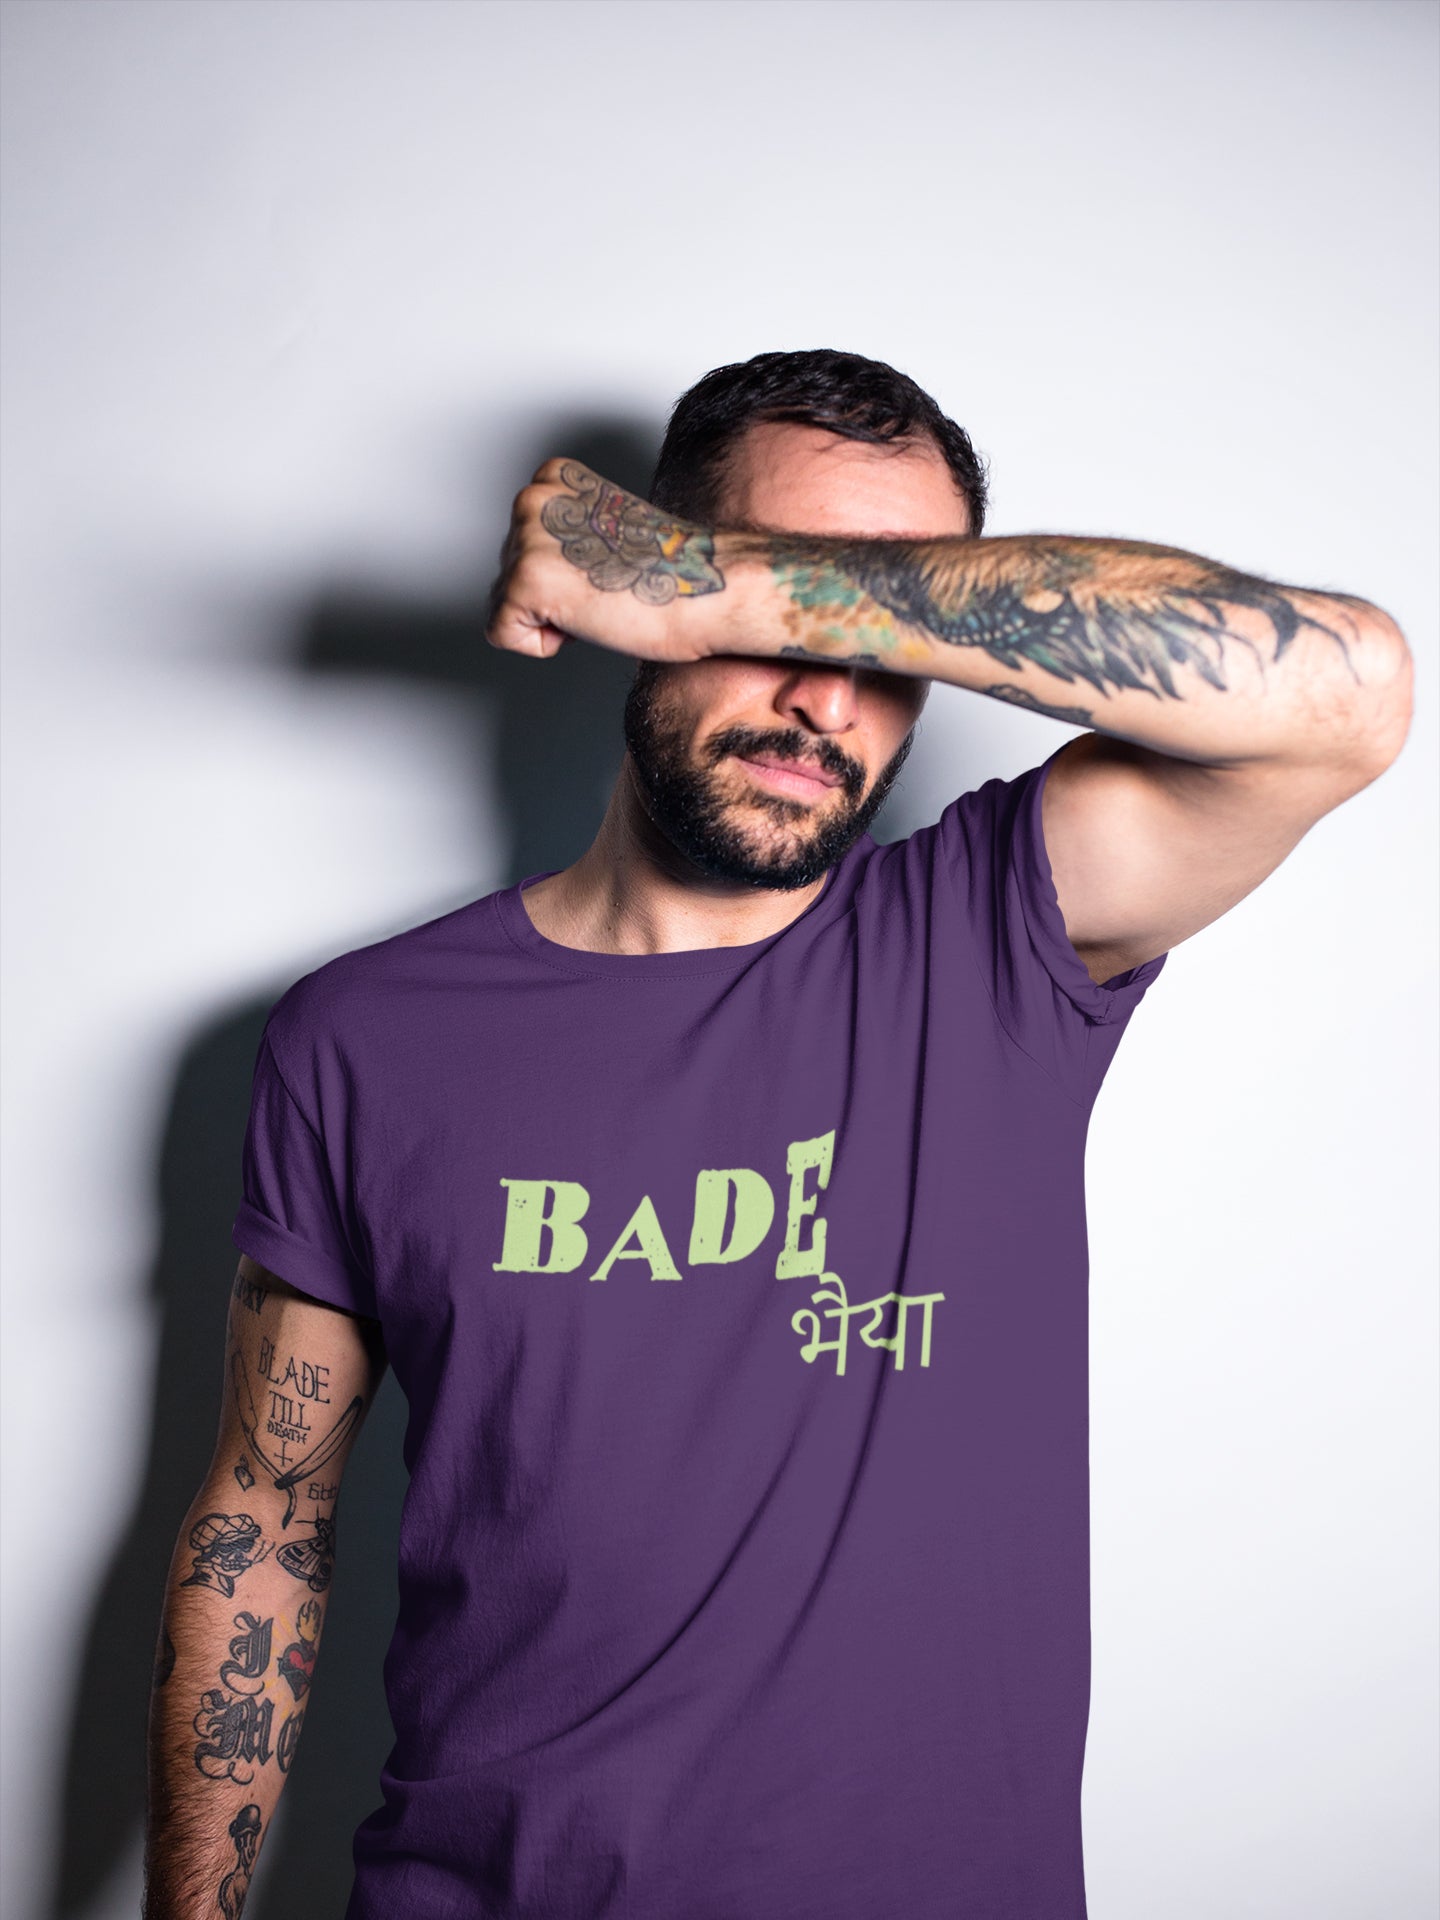 Bade Bhaiyya Summer T-shirt for Men